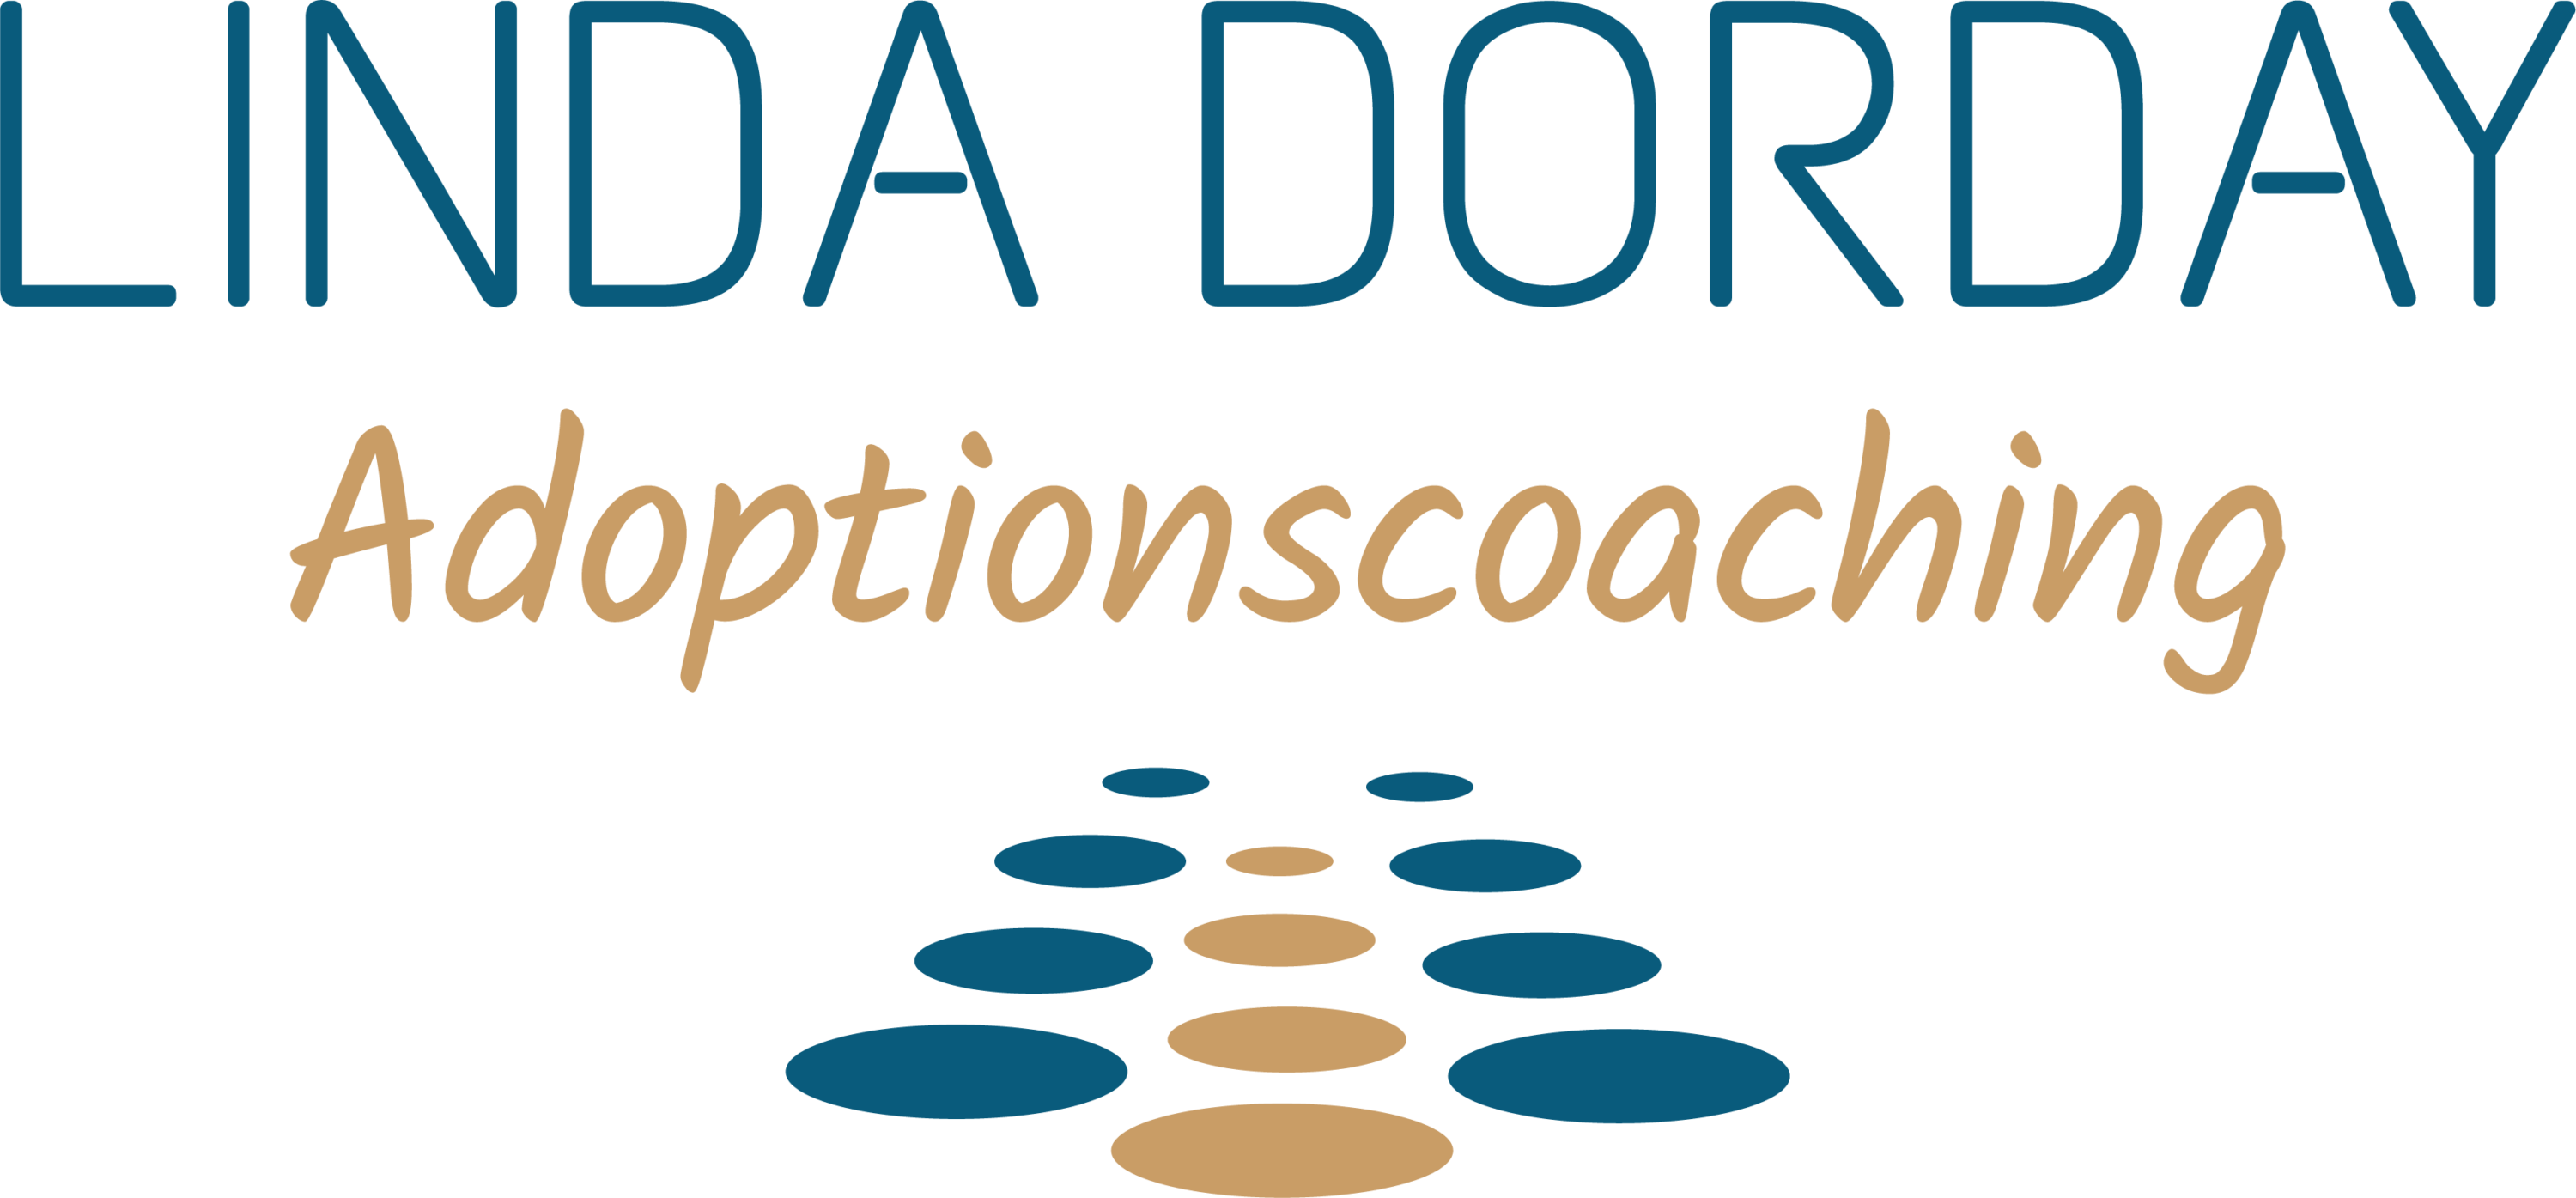 Linda-Dorday-Adoptionscoaching Logo